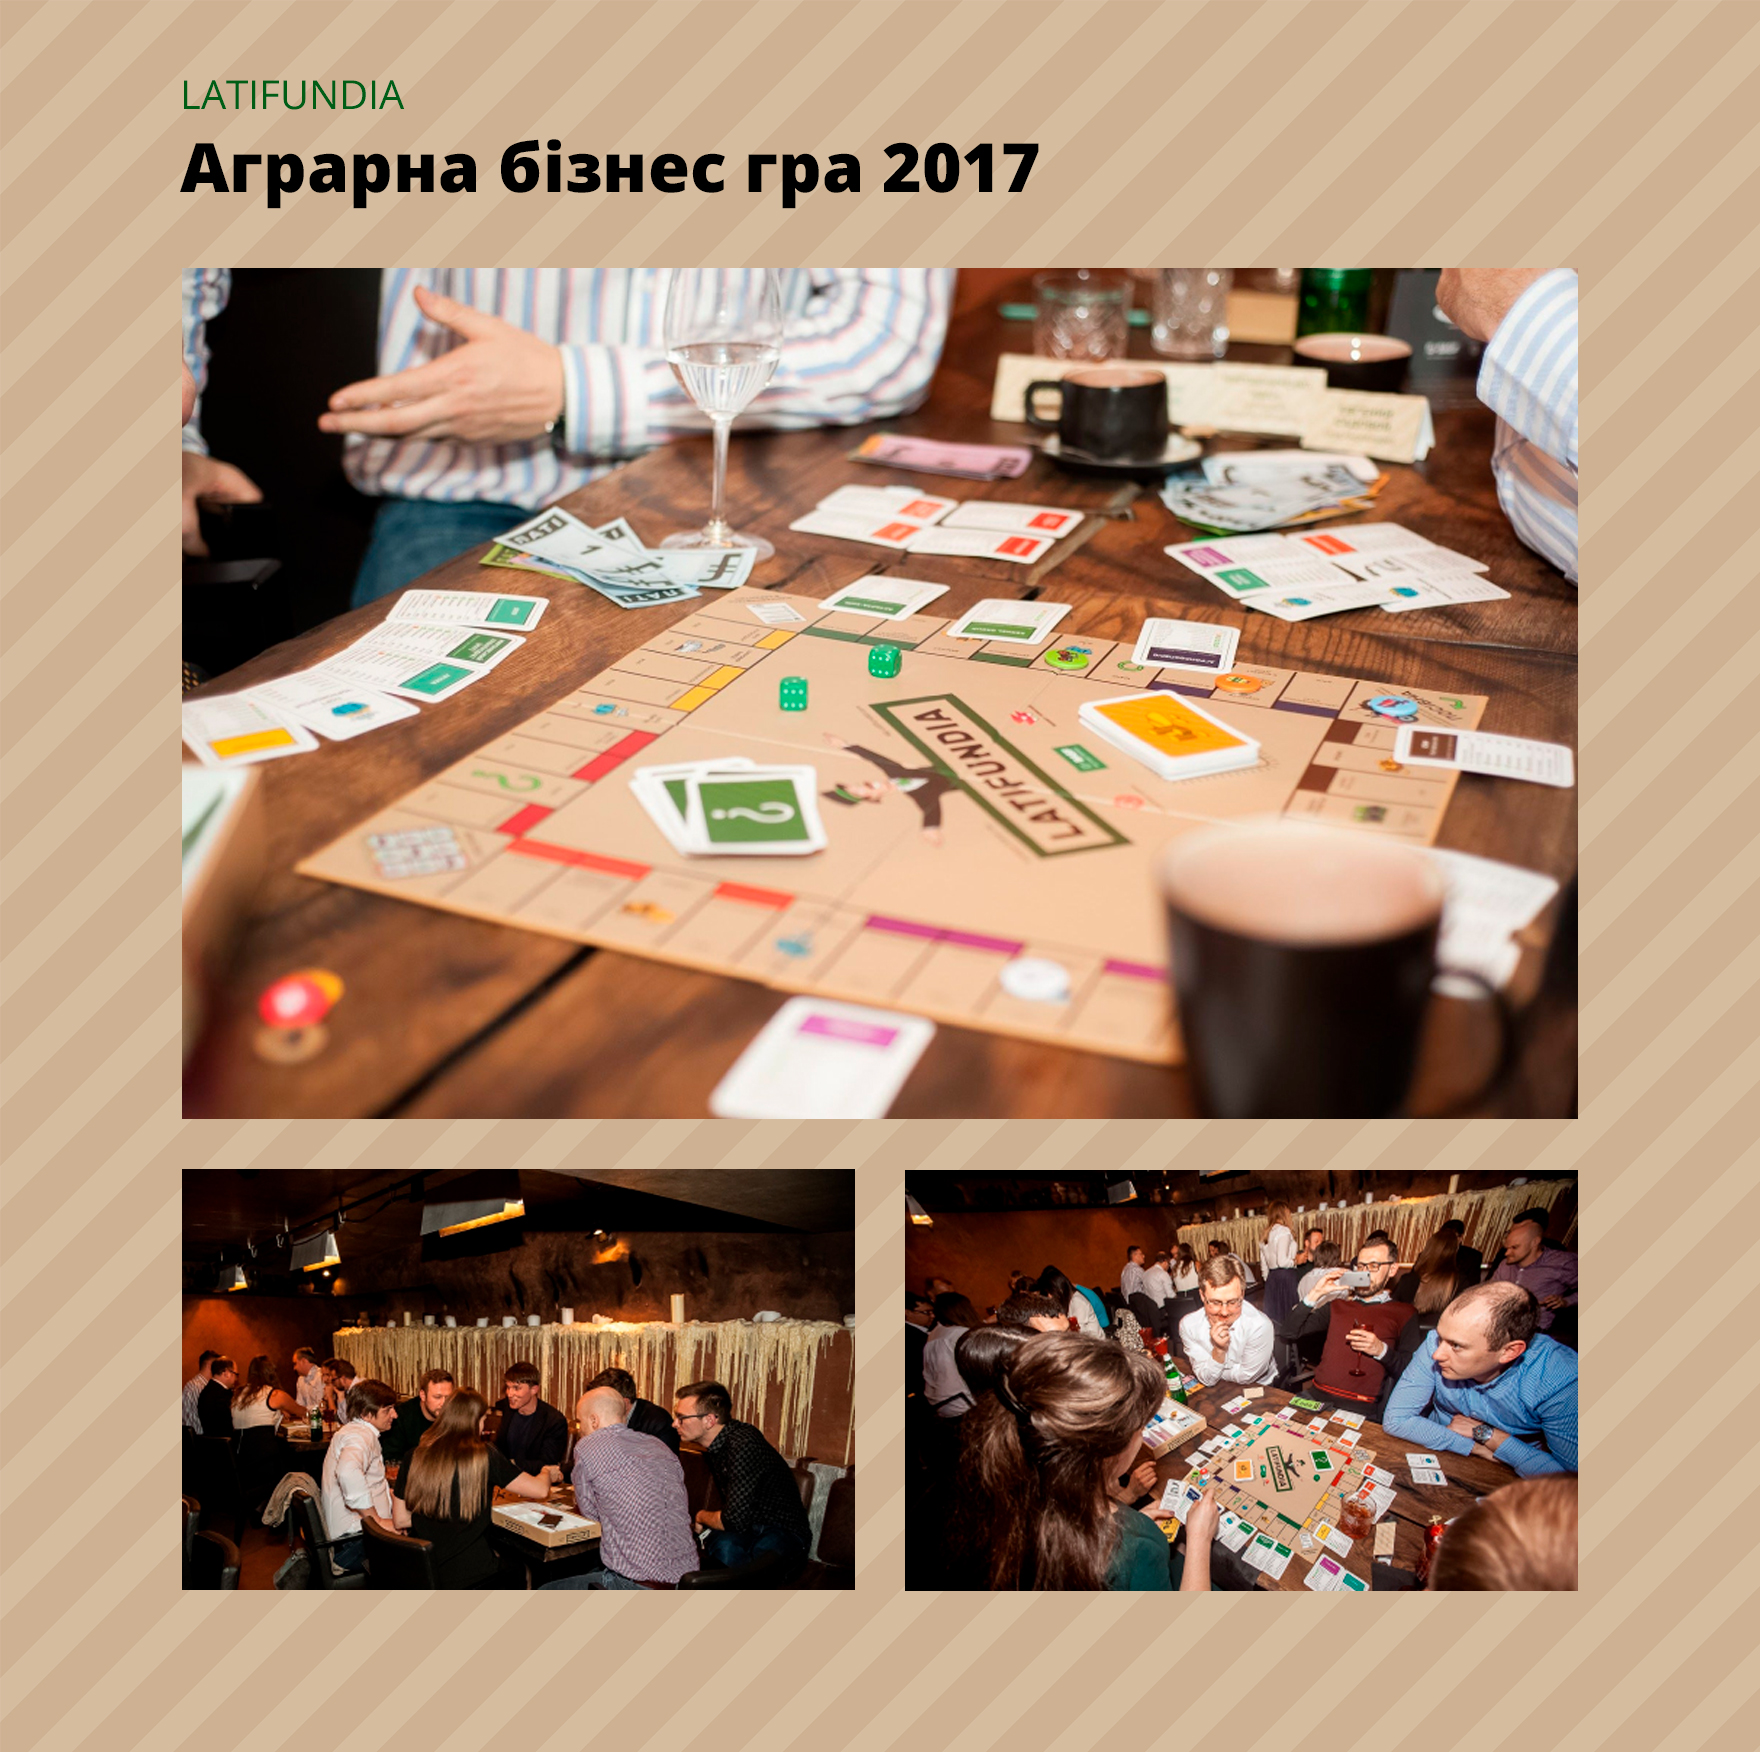 Проведення Аграрної Бізнес гри 2017 Latifundia